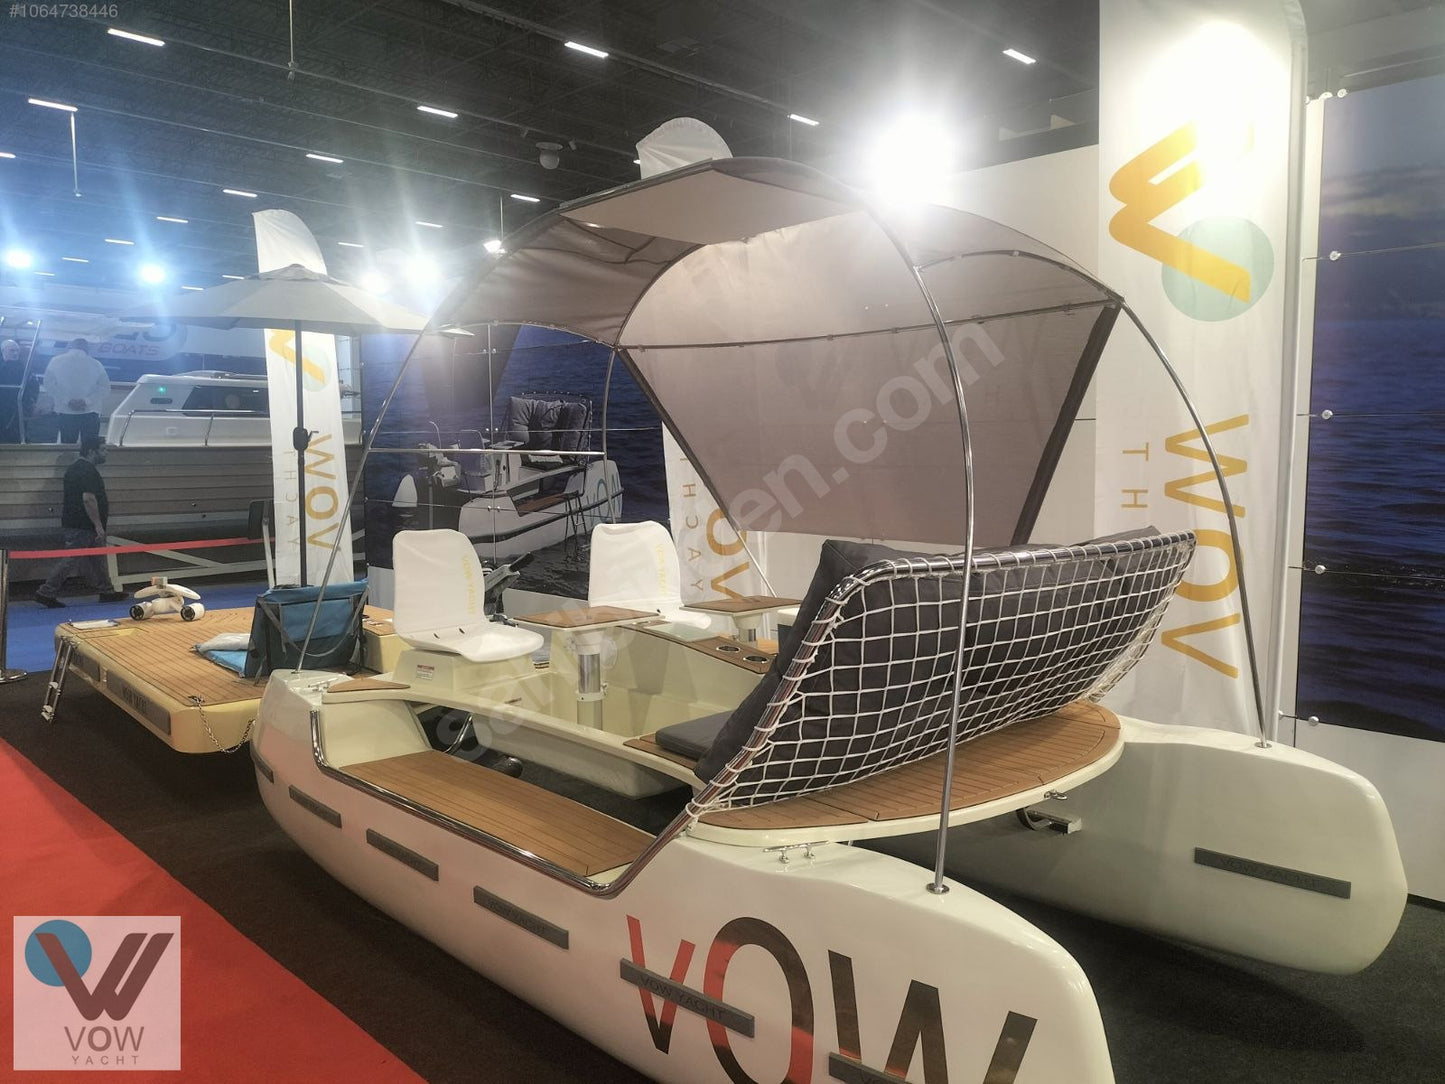 VOW E-Catamaran Solar powered